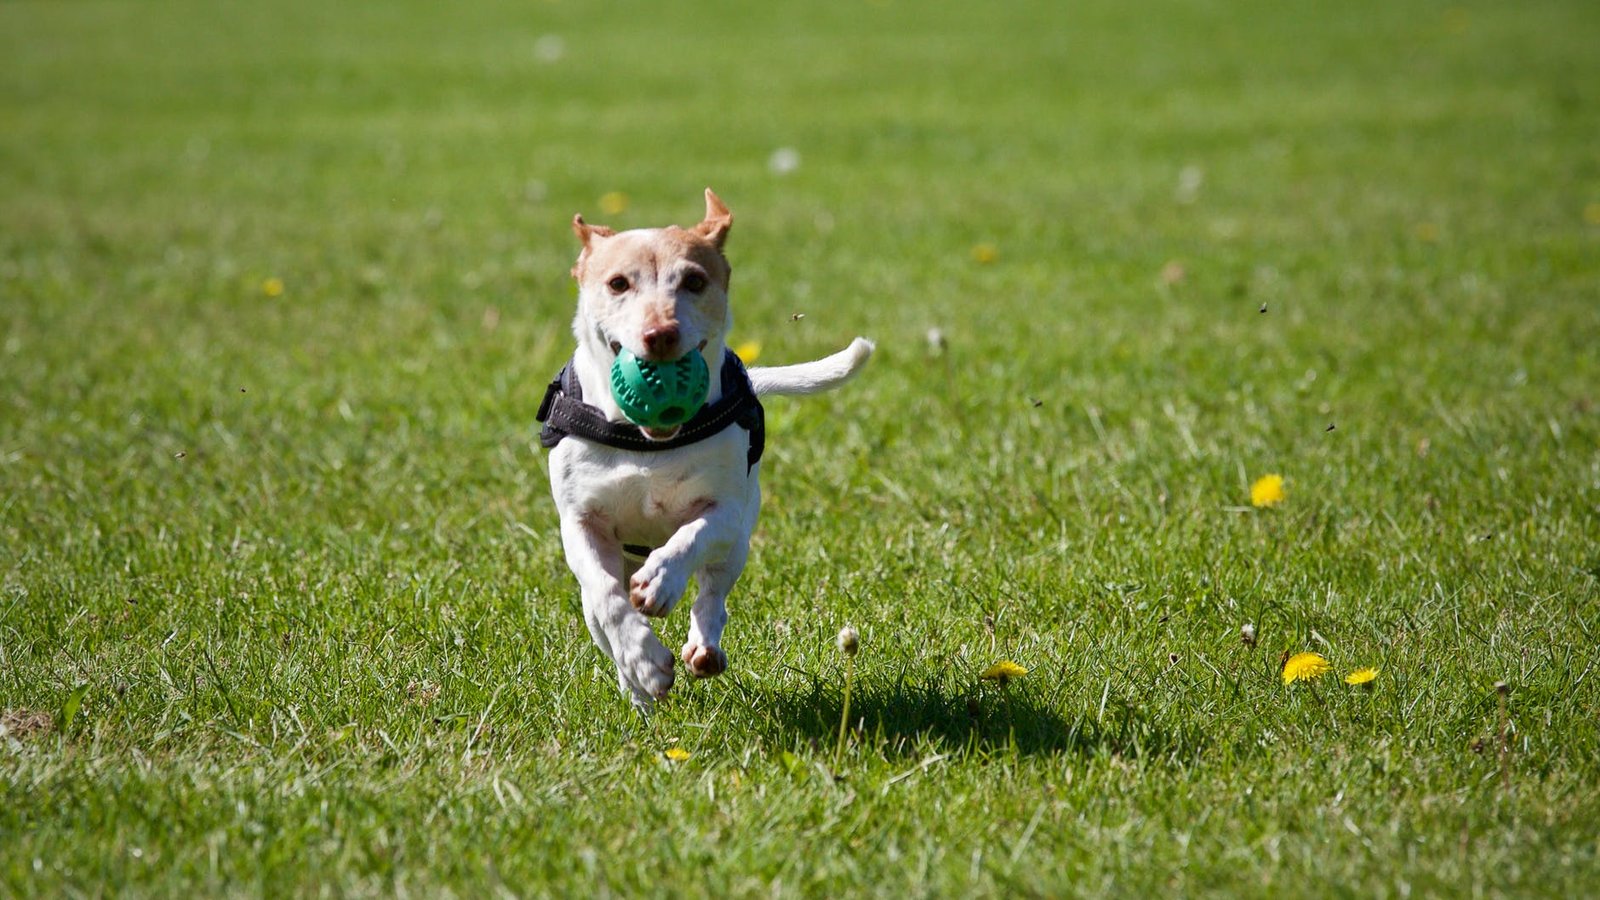 Lancashire farm seeks permission for dog walking paddock